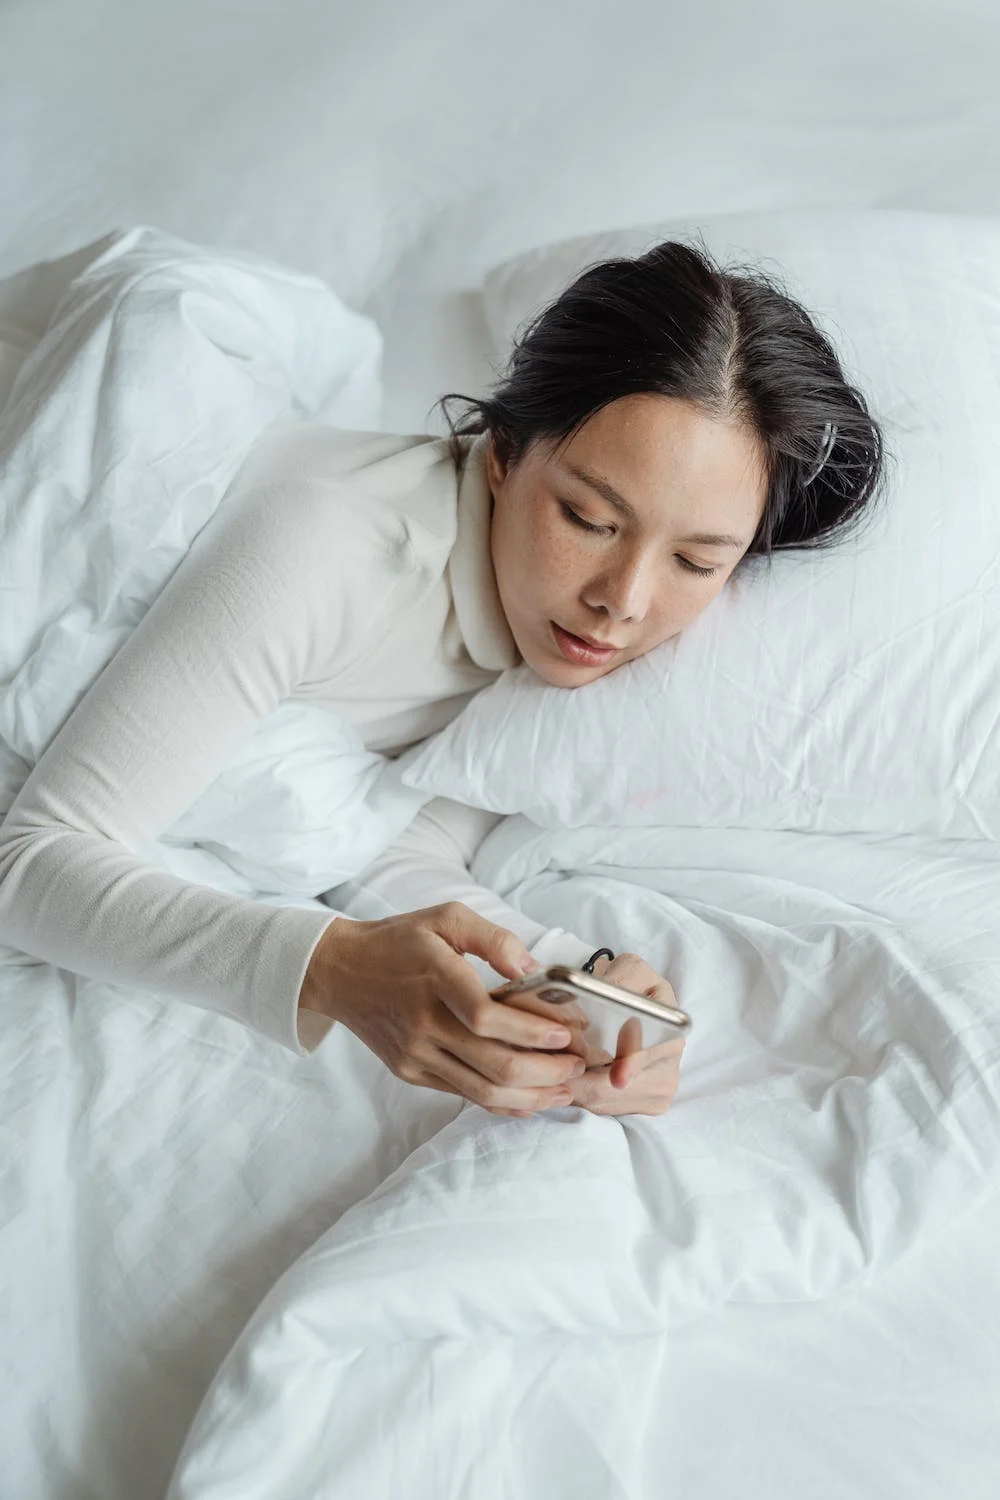 Hạn chế sử dụng điện thoại trước khi ngủ.